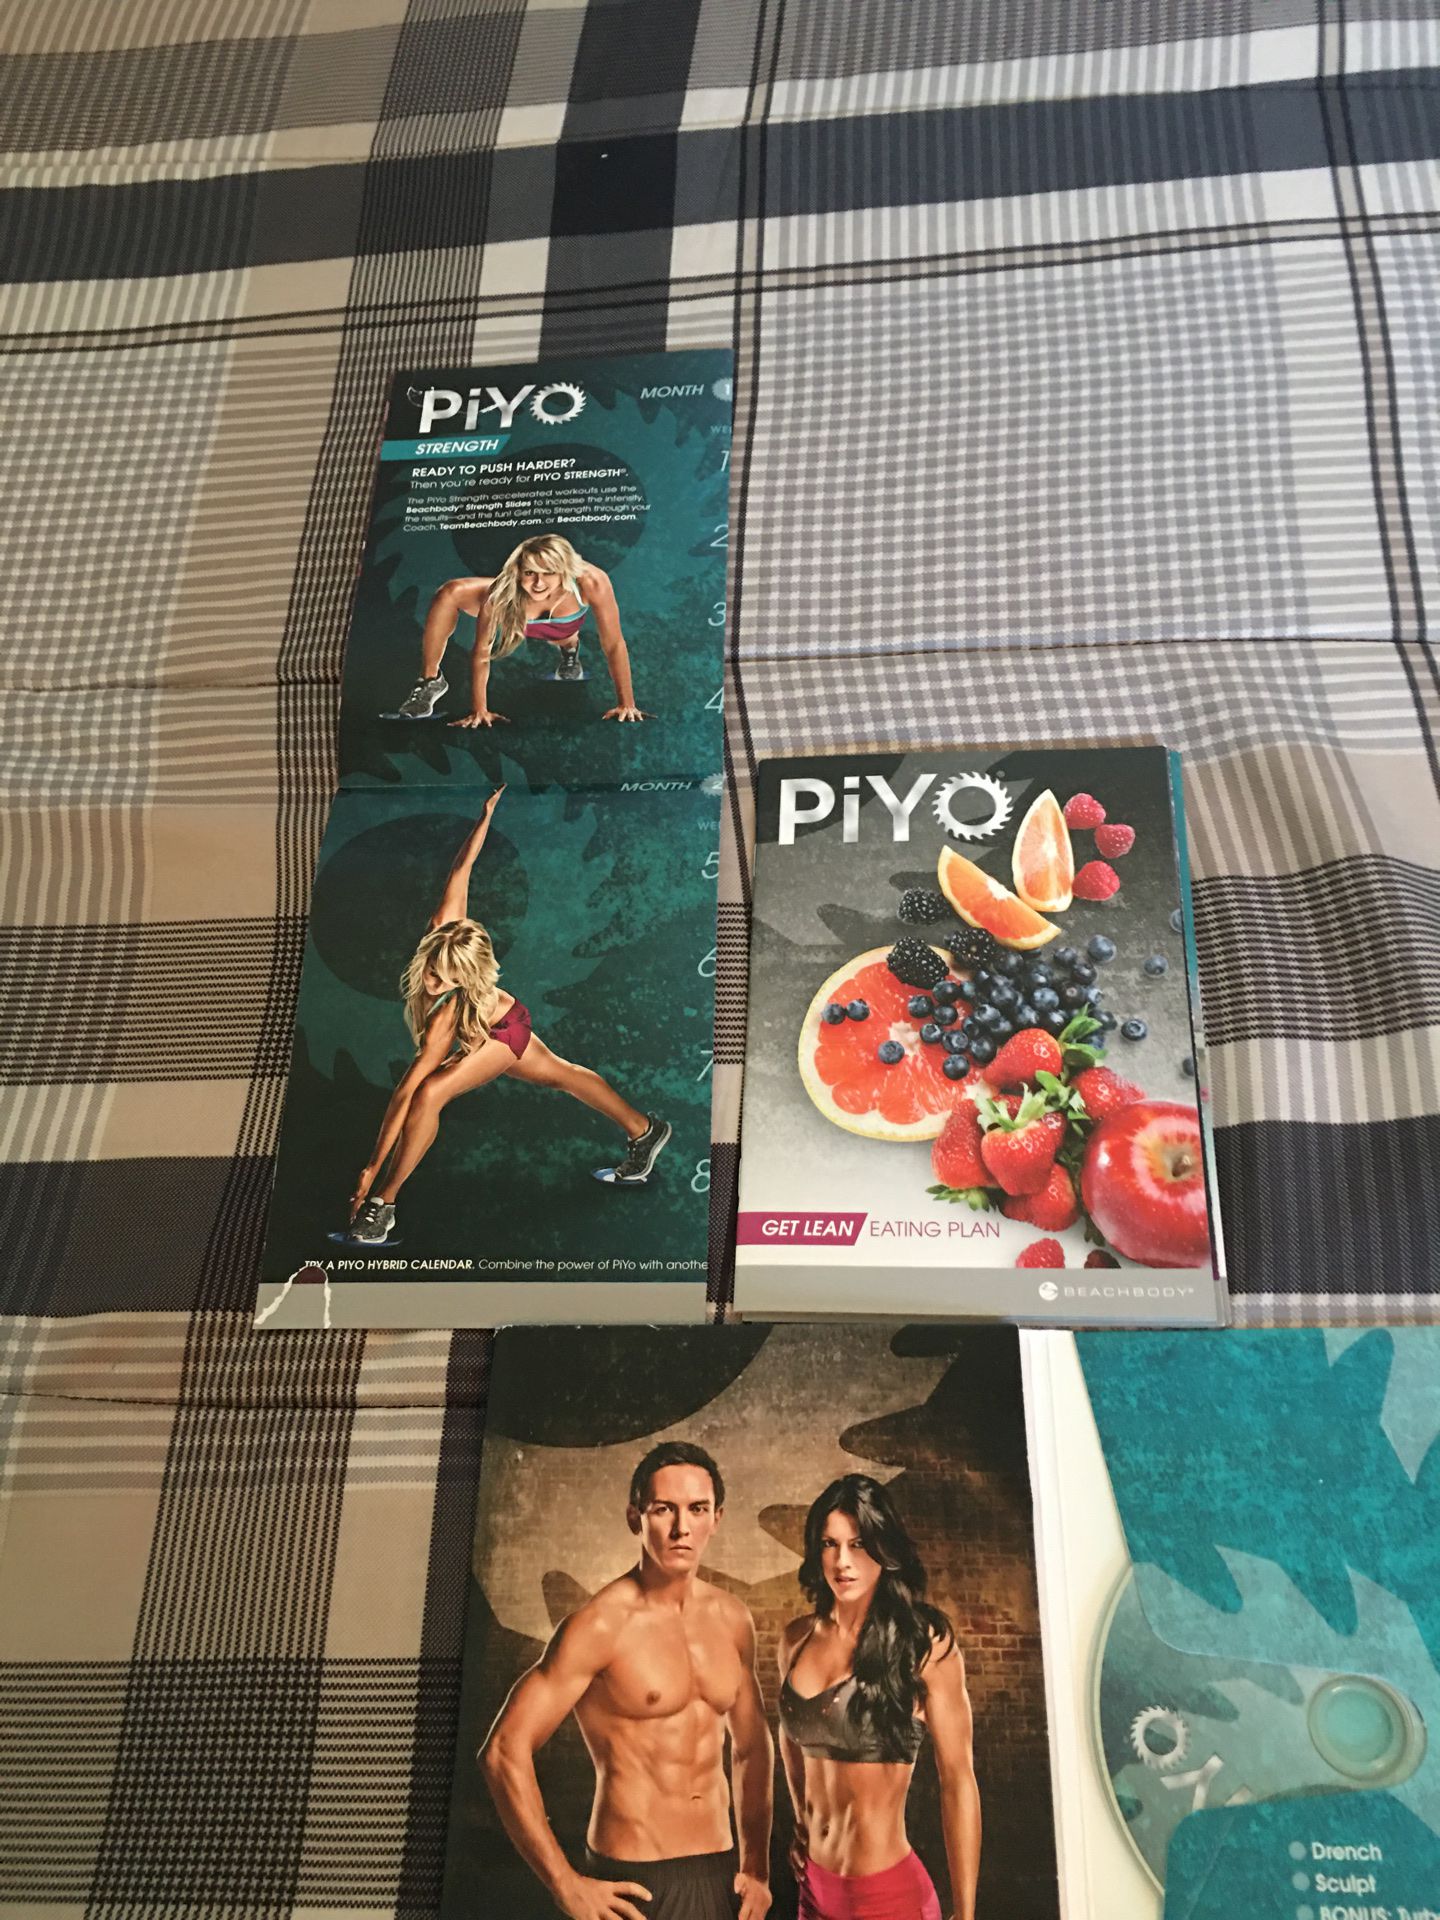 Pyo workout 3 dvd videos plus eating plan a pyo hybrid calendar & more!!